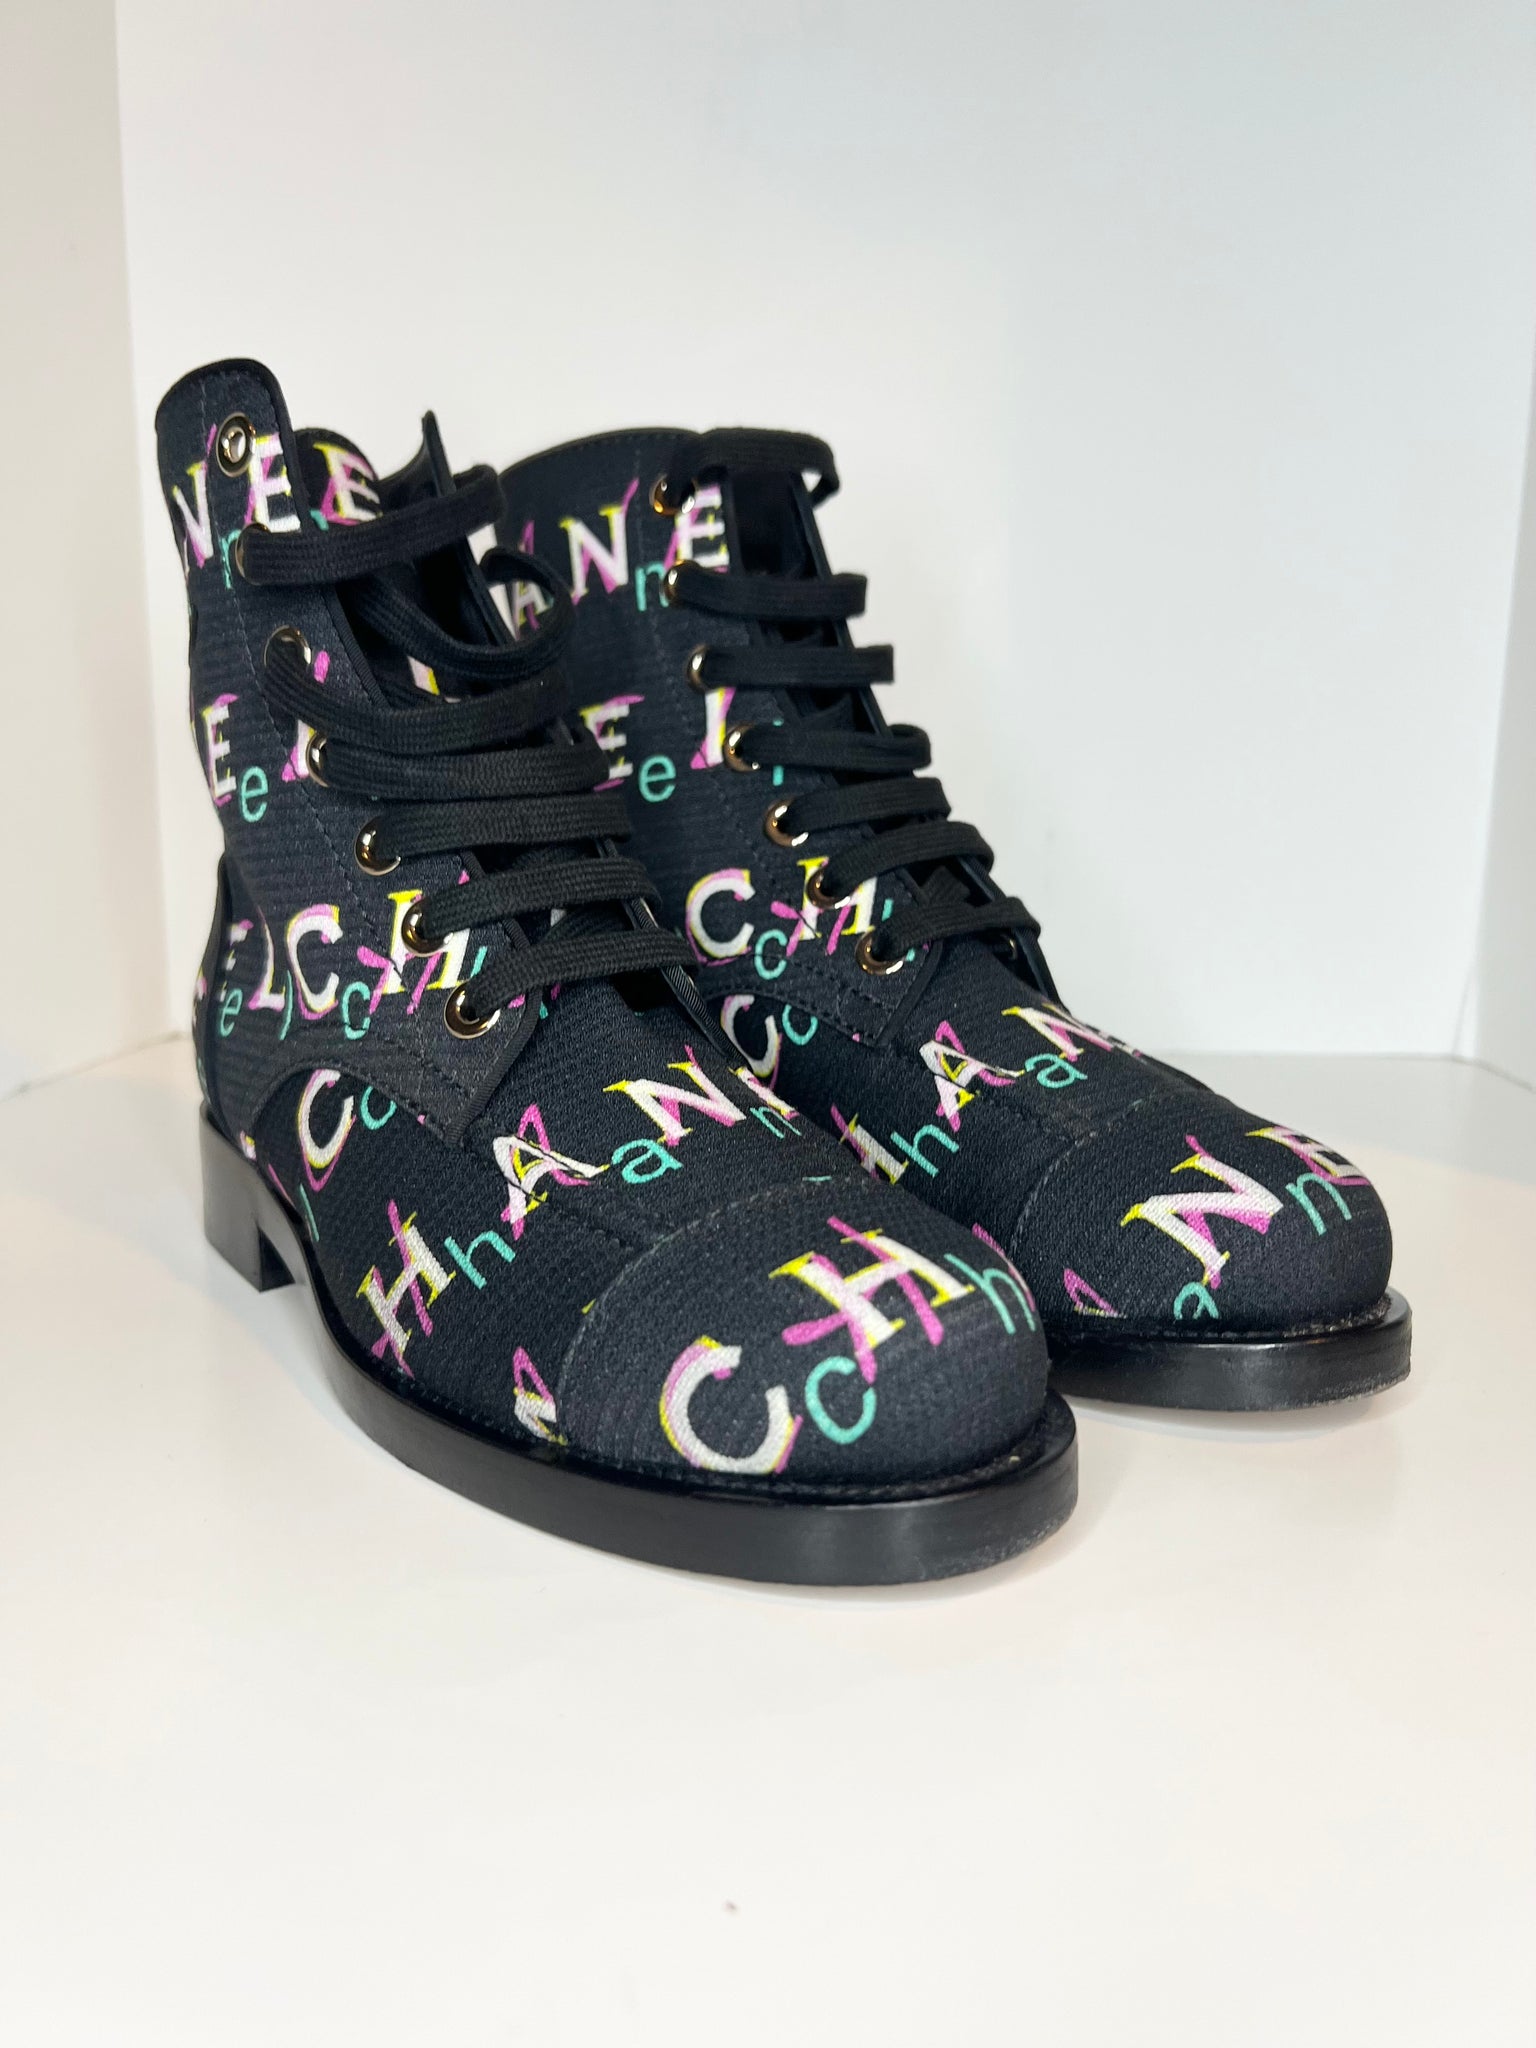 Chanel Black High Caoutchouc CC Boots 38